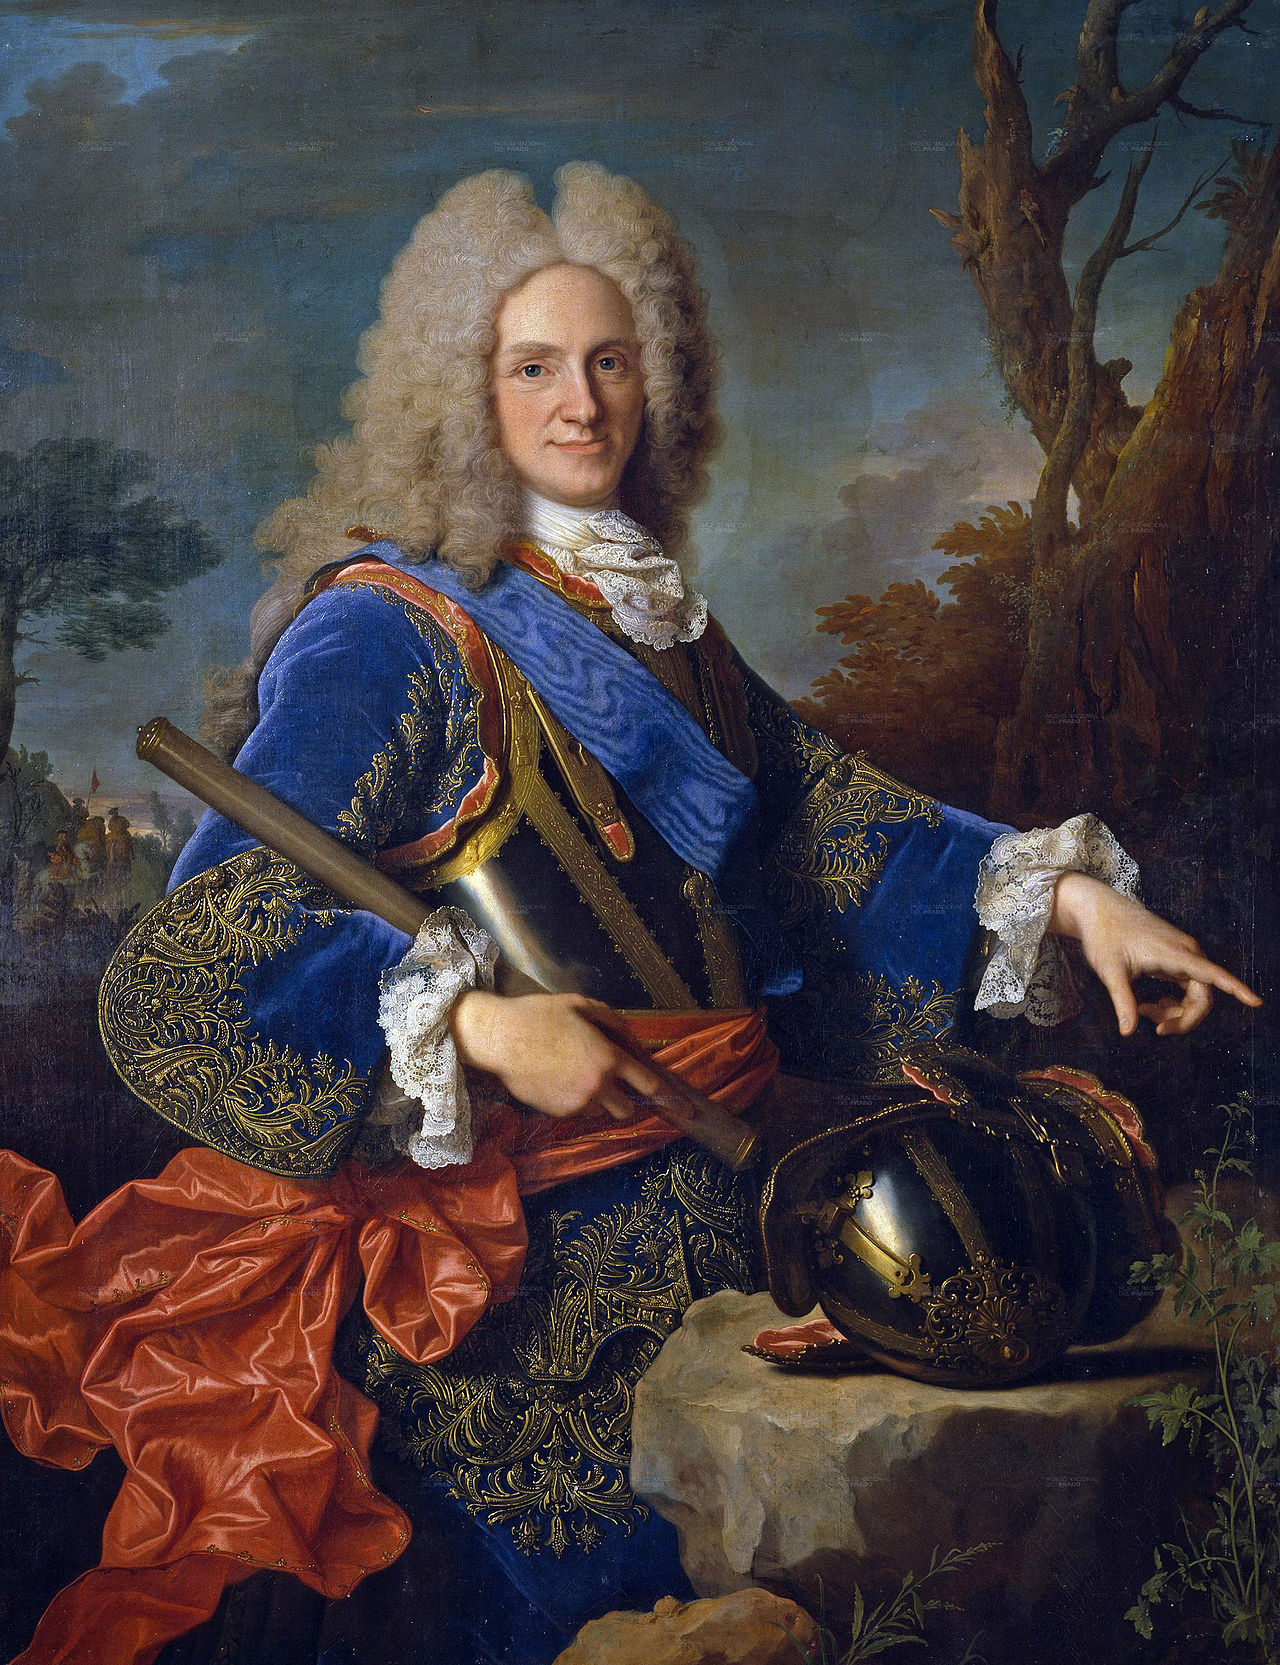 Retrato de Felipe V, primer rey español de la dinastía de los Borbones. Promovió las llamadas reformas borbónicas. Pintura realizada por el artista francés Jean Ranc.